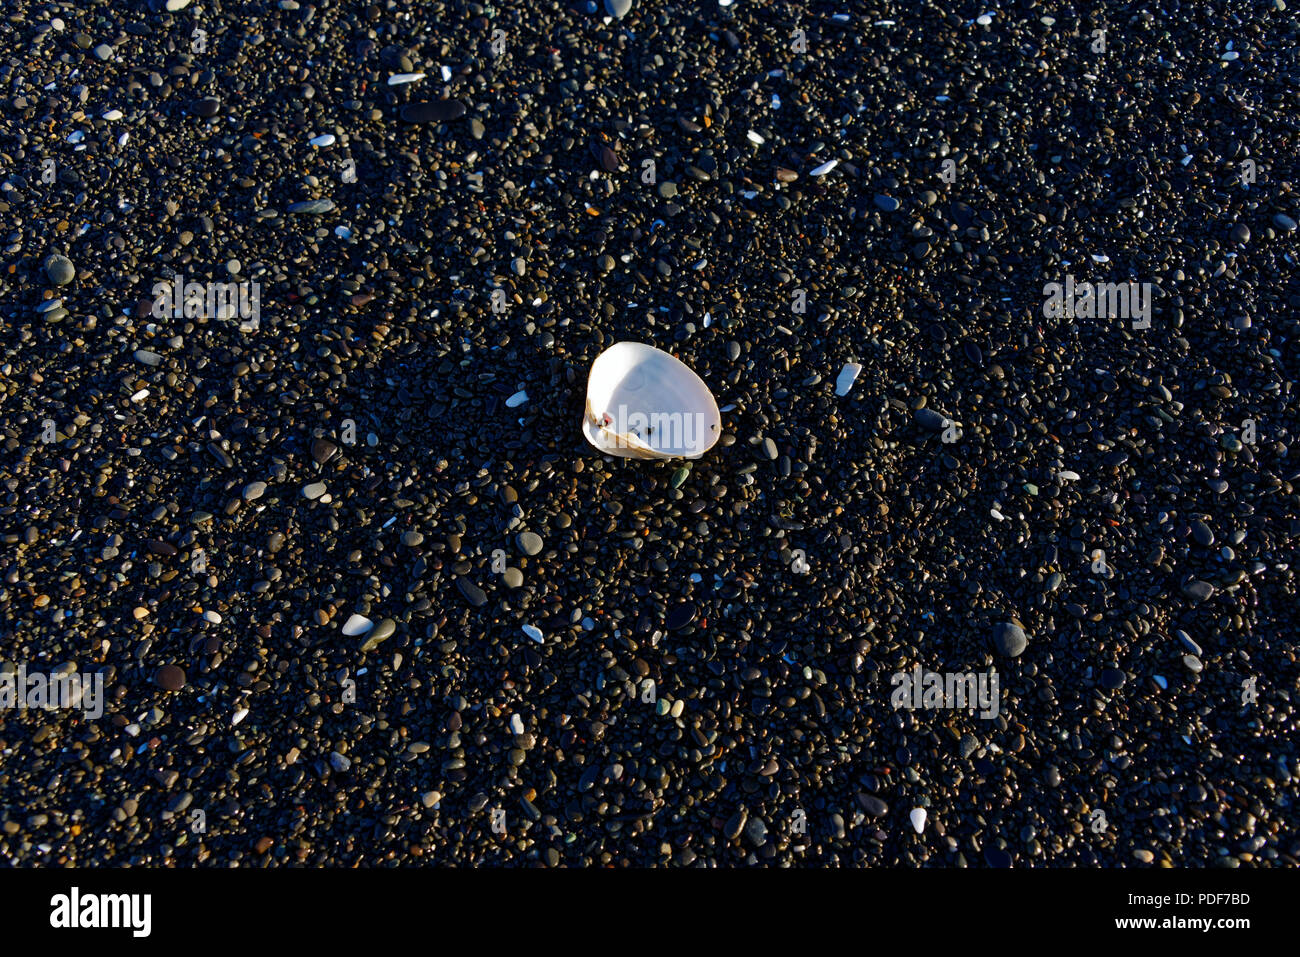 Eine shell mit Kiesel auf einem steinigen Strand, in der die verschiedenen Farben der Steine gegen das Weiße der Schale umgeben. Stockfoto